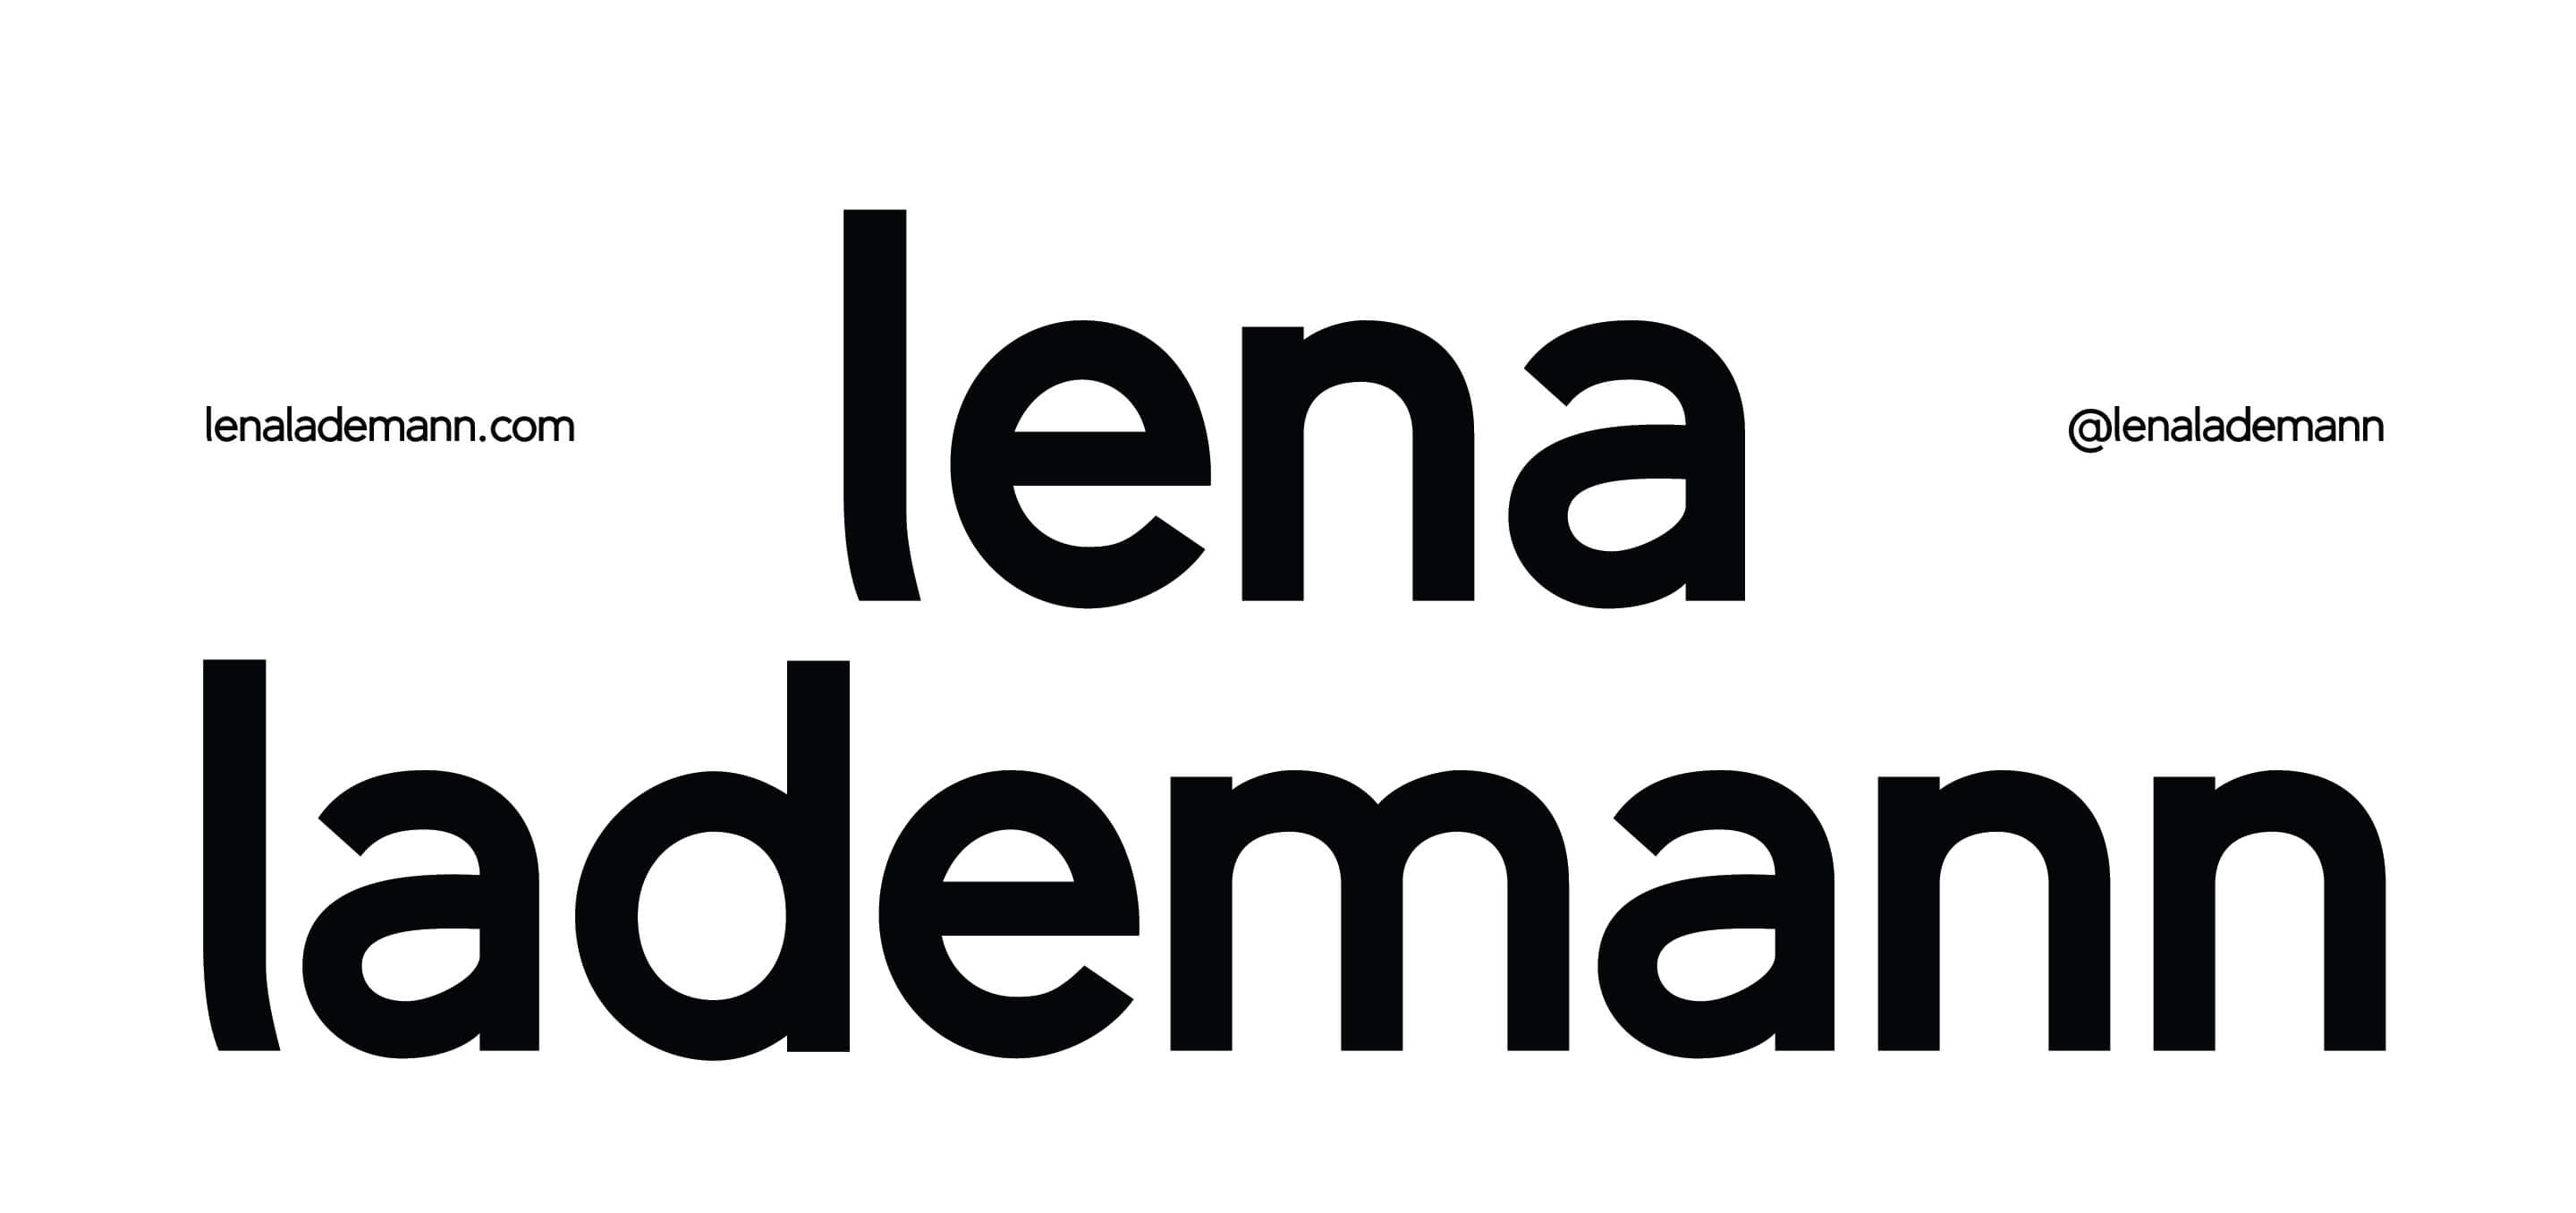 Lenalademann.com 2